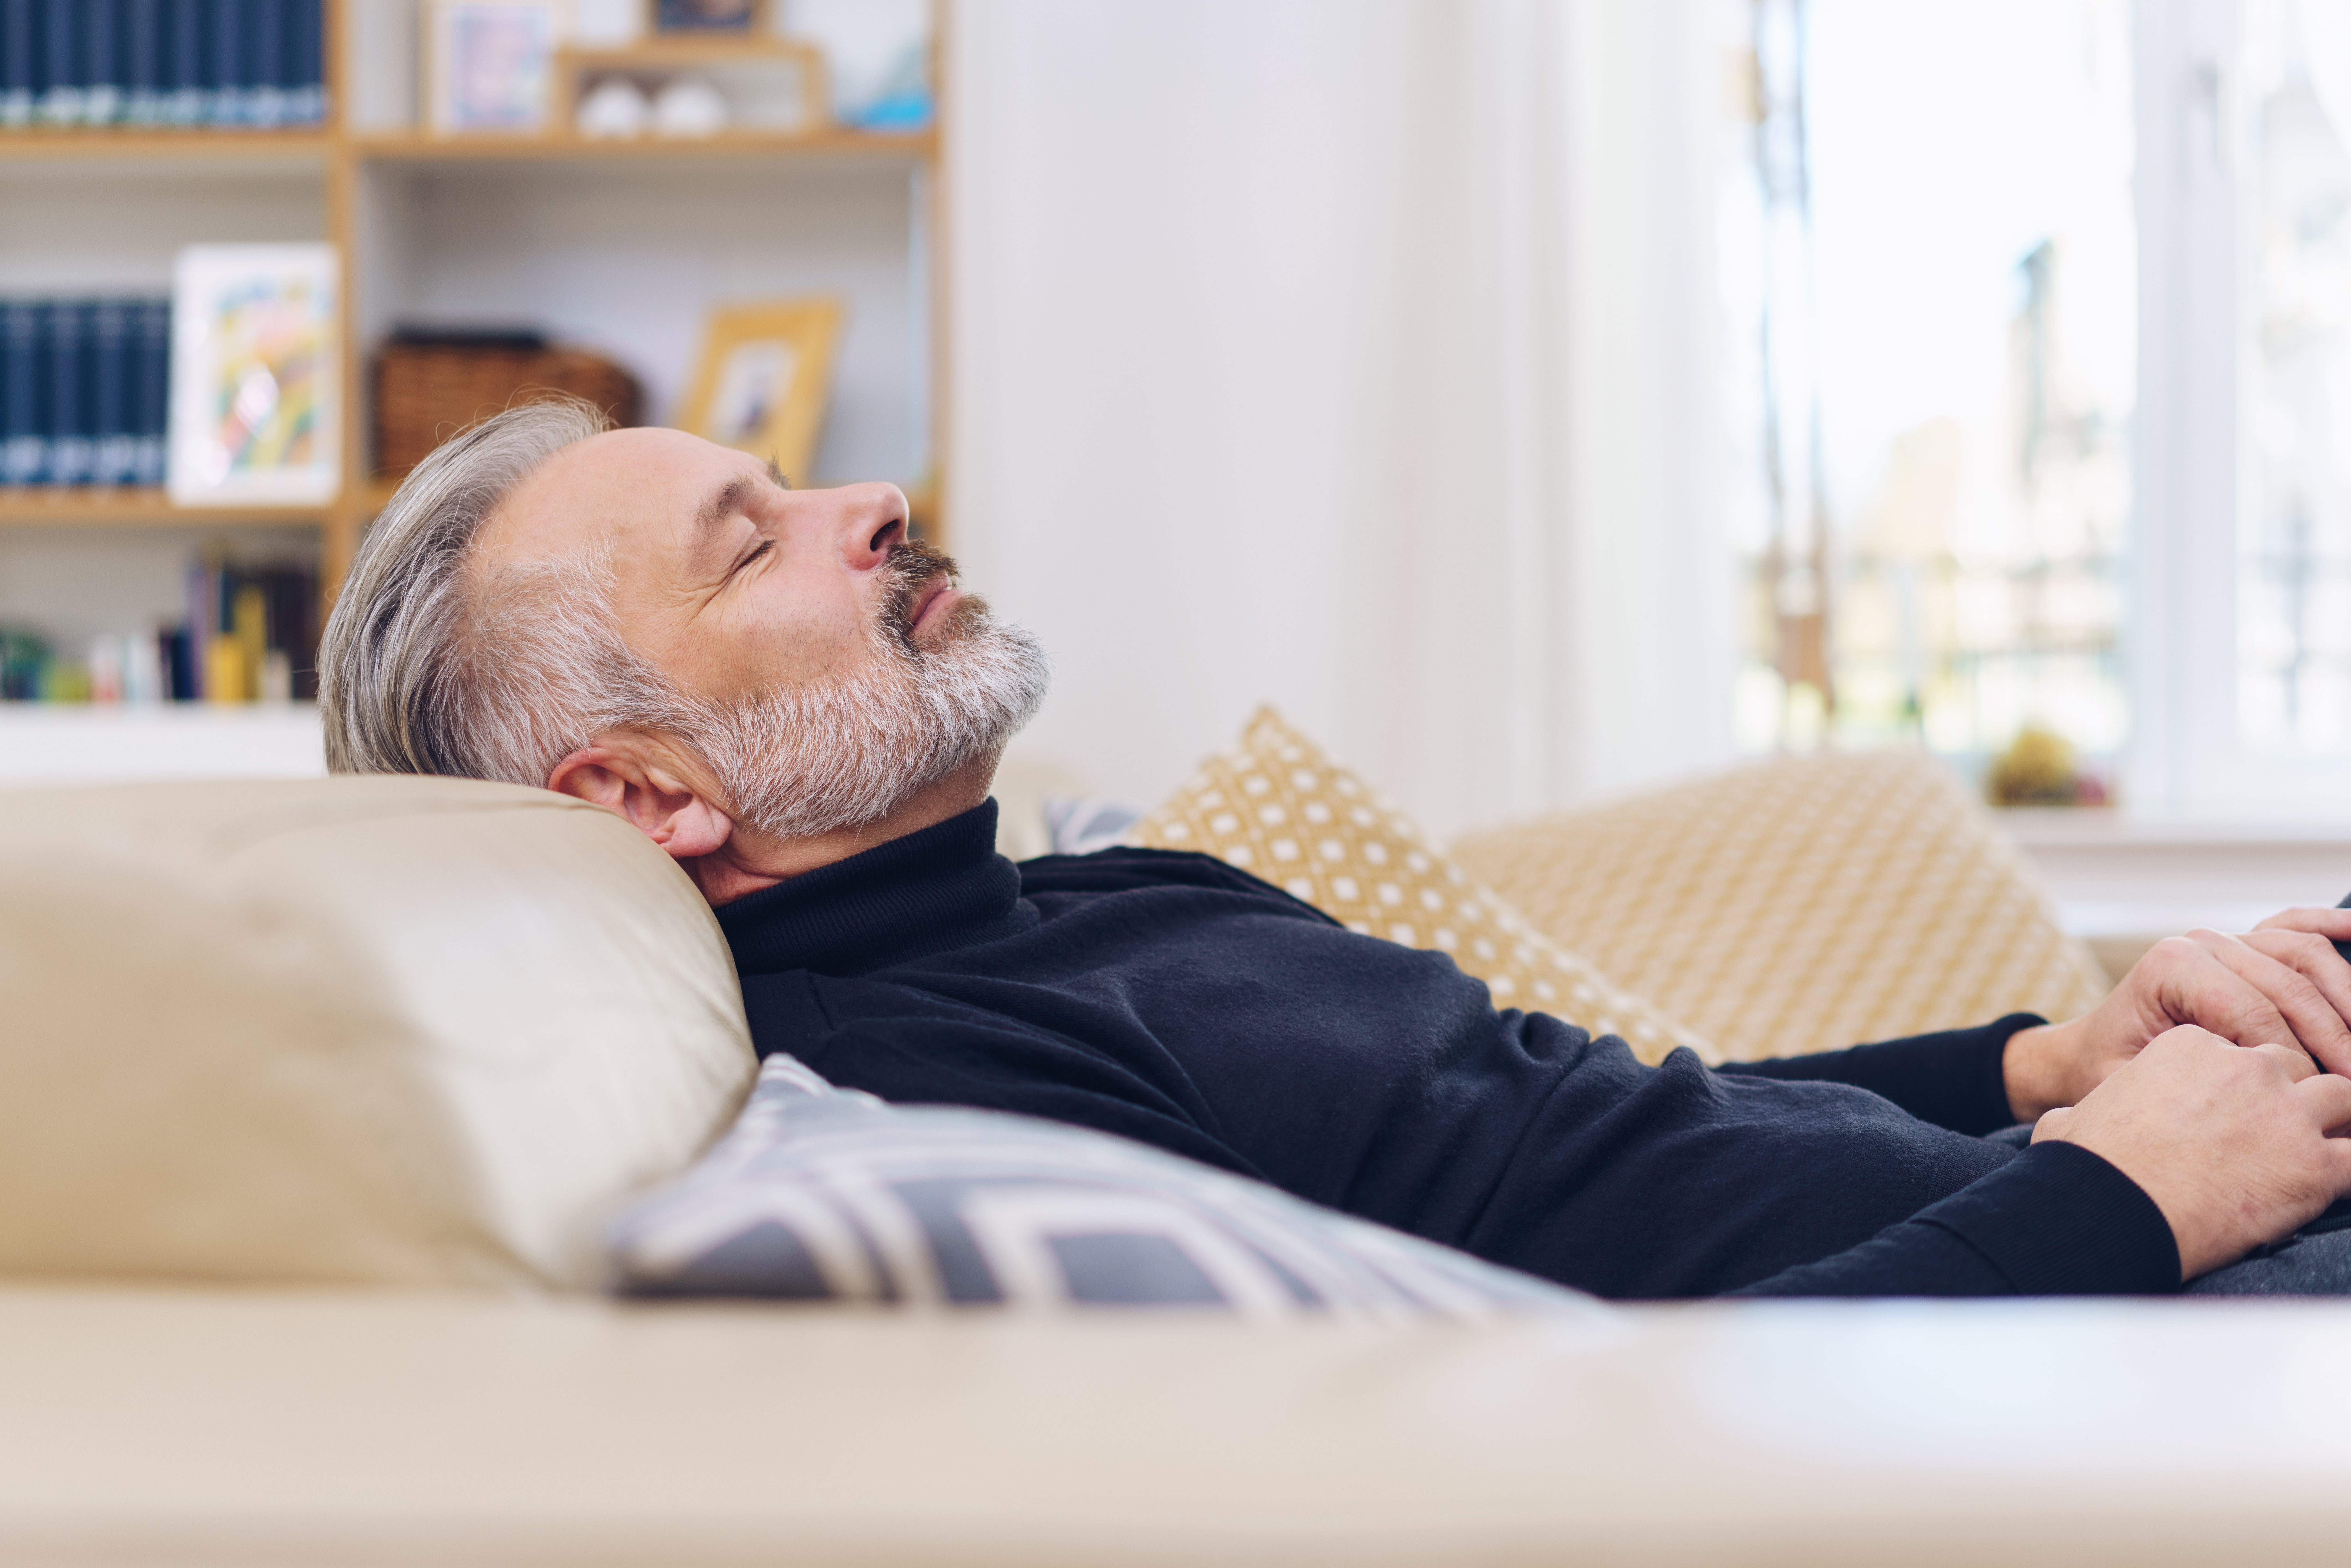 Les habitués de la sieste auraient un volume cérébral plus important que les autres à un âge avancé. © Contrastwerkstatt, Adobe Stock